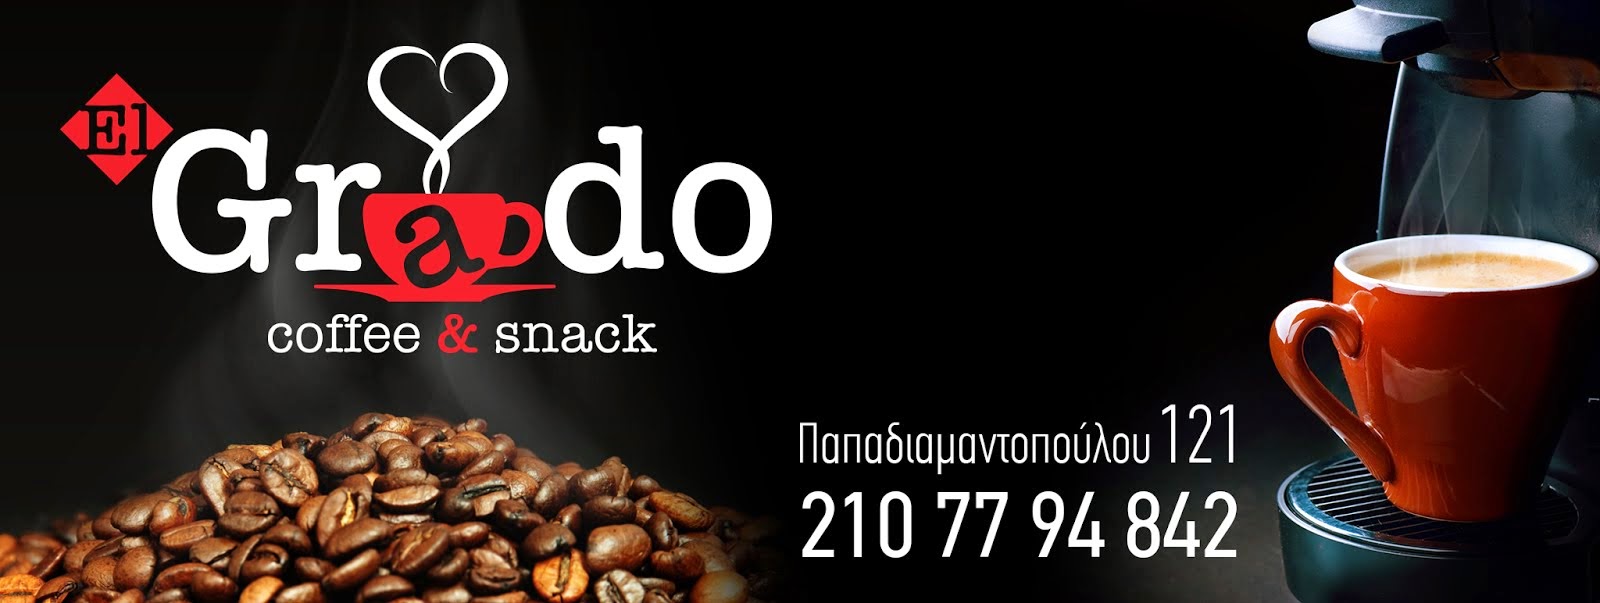 El Grado coffee & snack